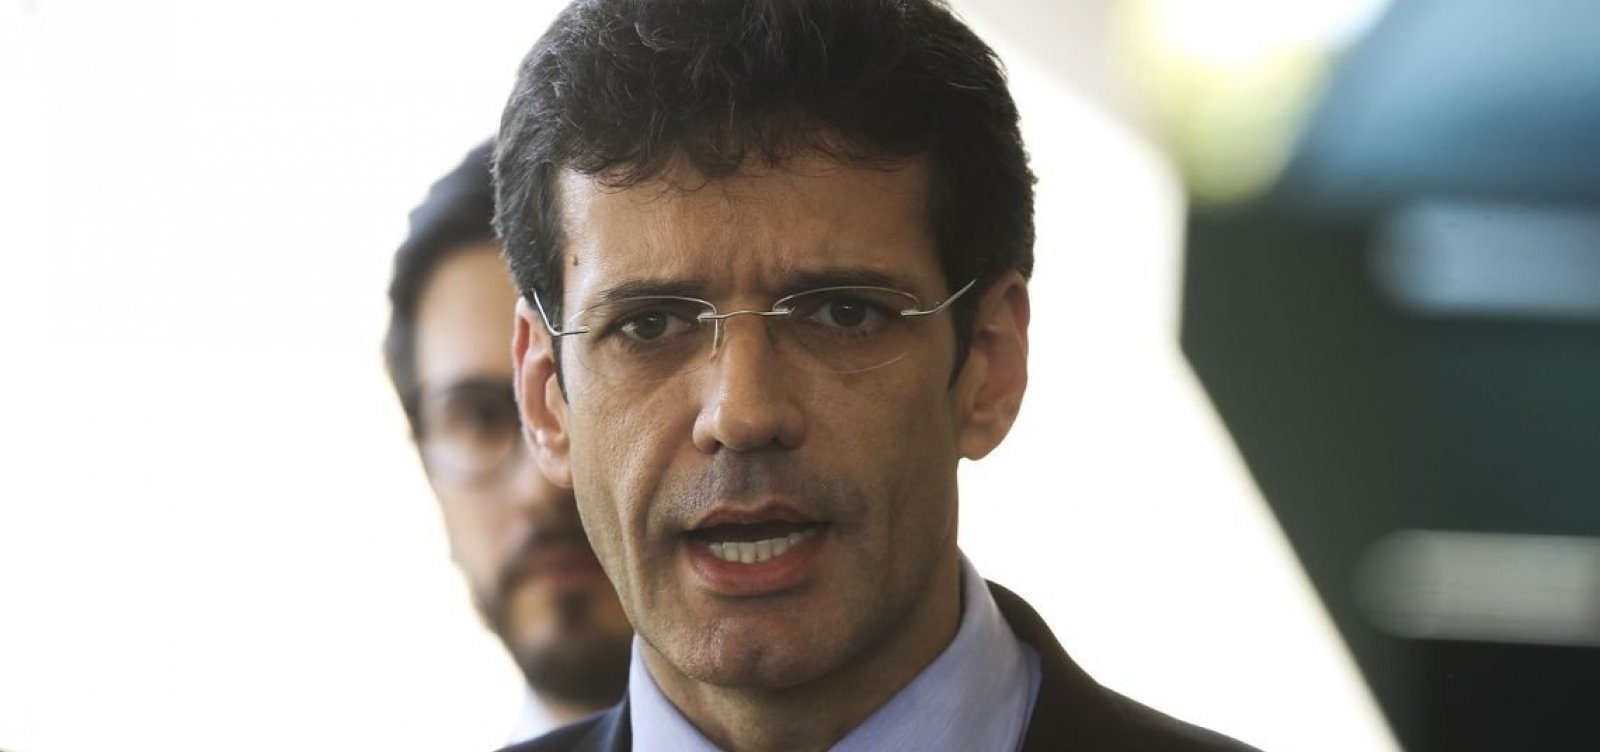 Brasil pretende eliminar exigência de visto para americanos, diz ministro